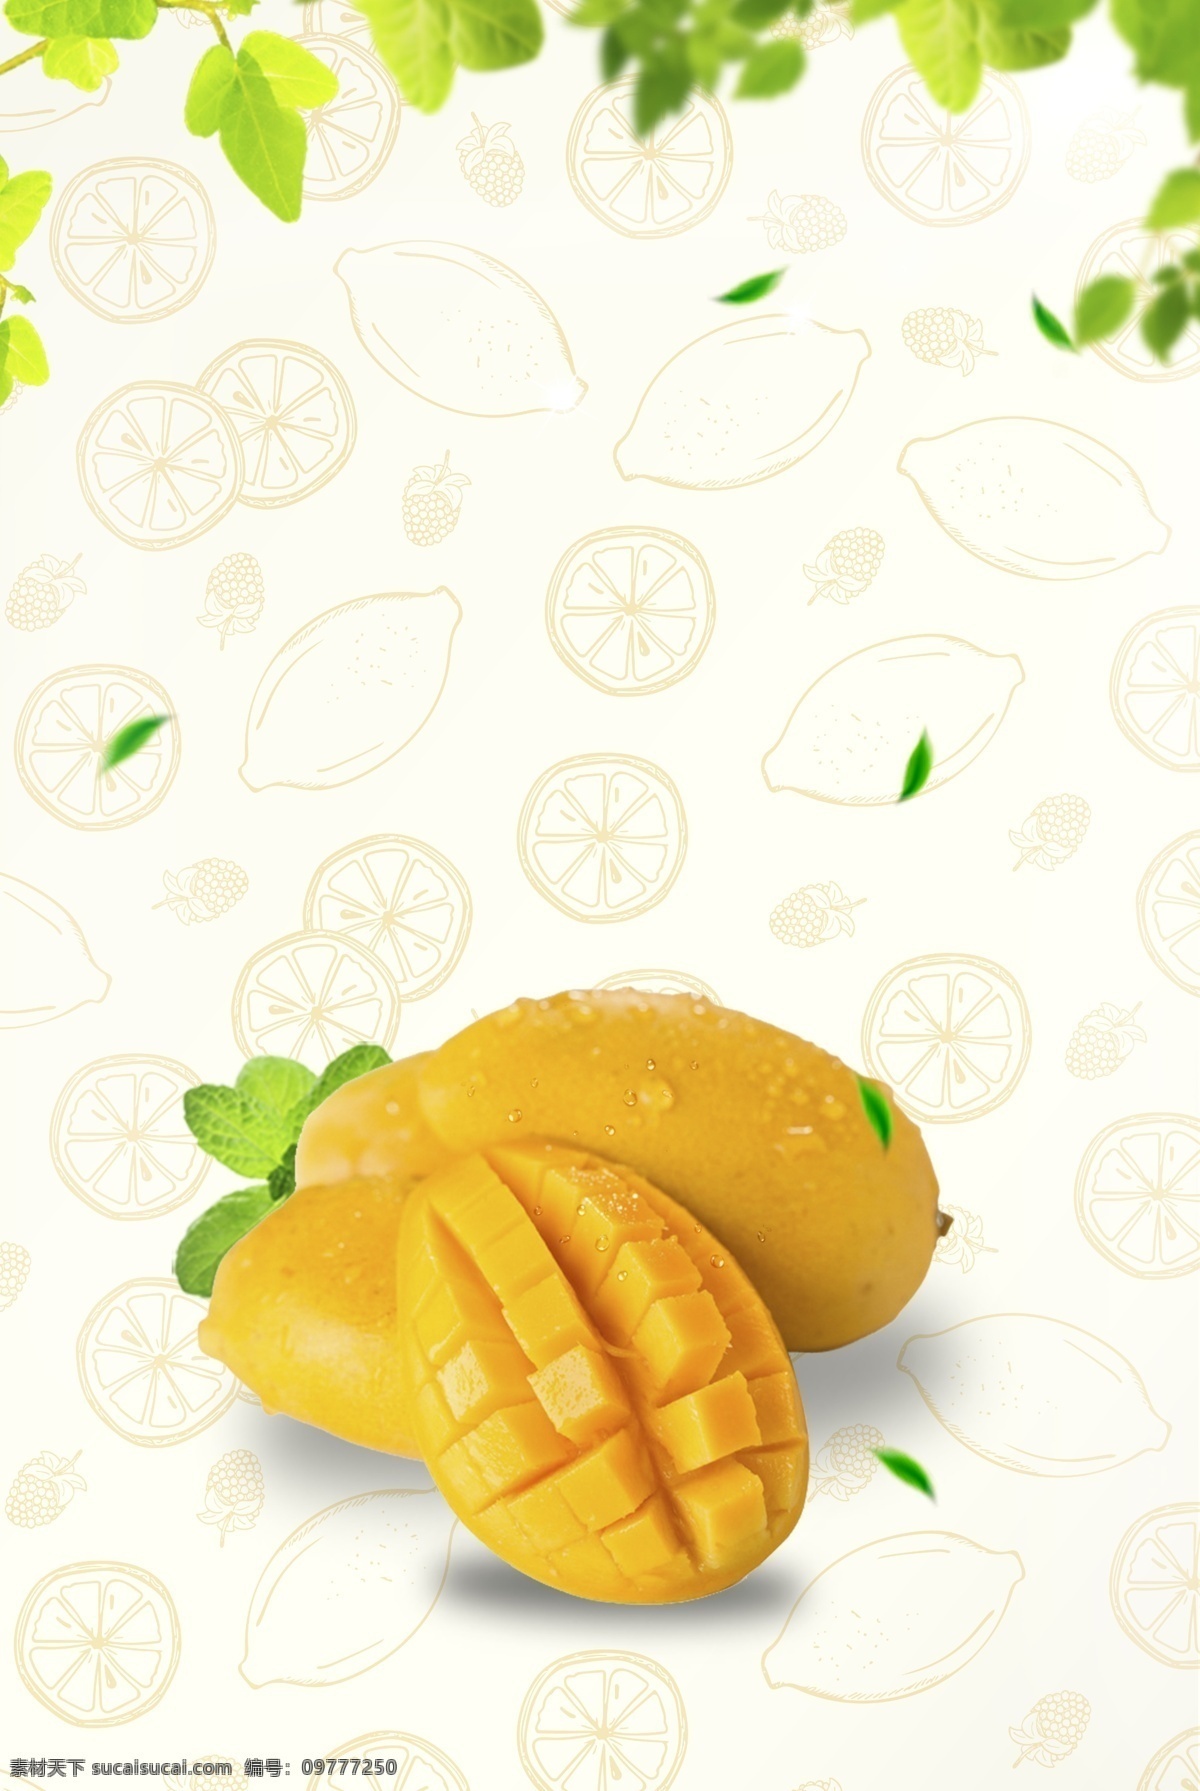 简单 美味 芒果 背景 夏天 夏季 清爽 水货 水果 果蔬 新鲜 五月水果 冰镇 西瓜